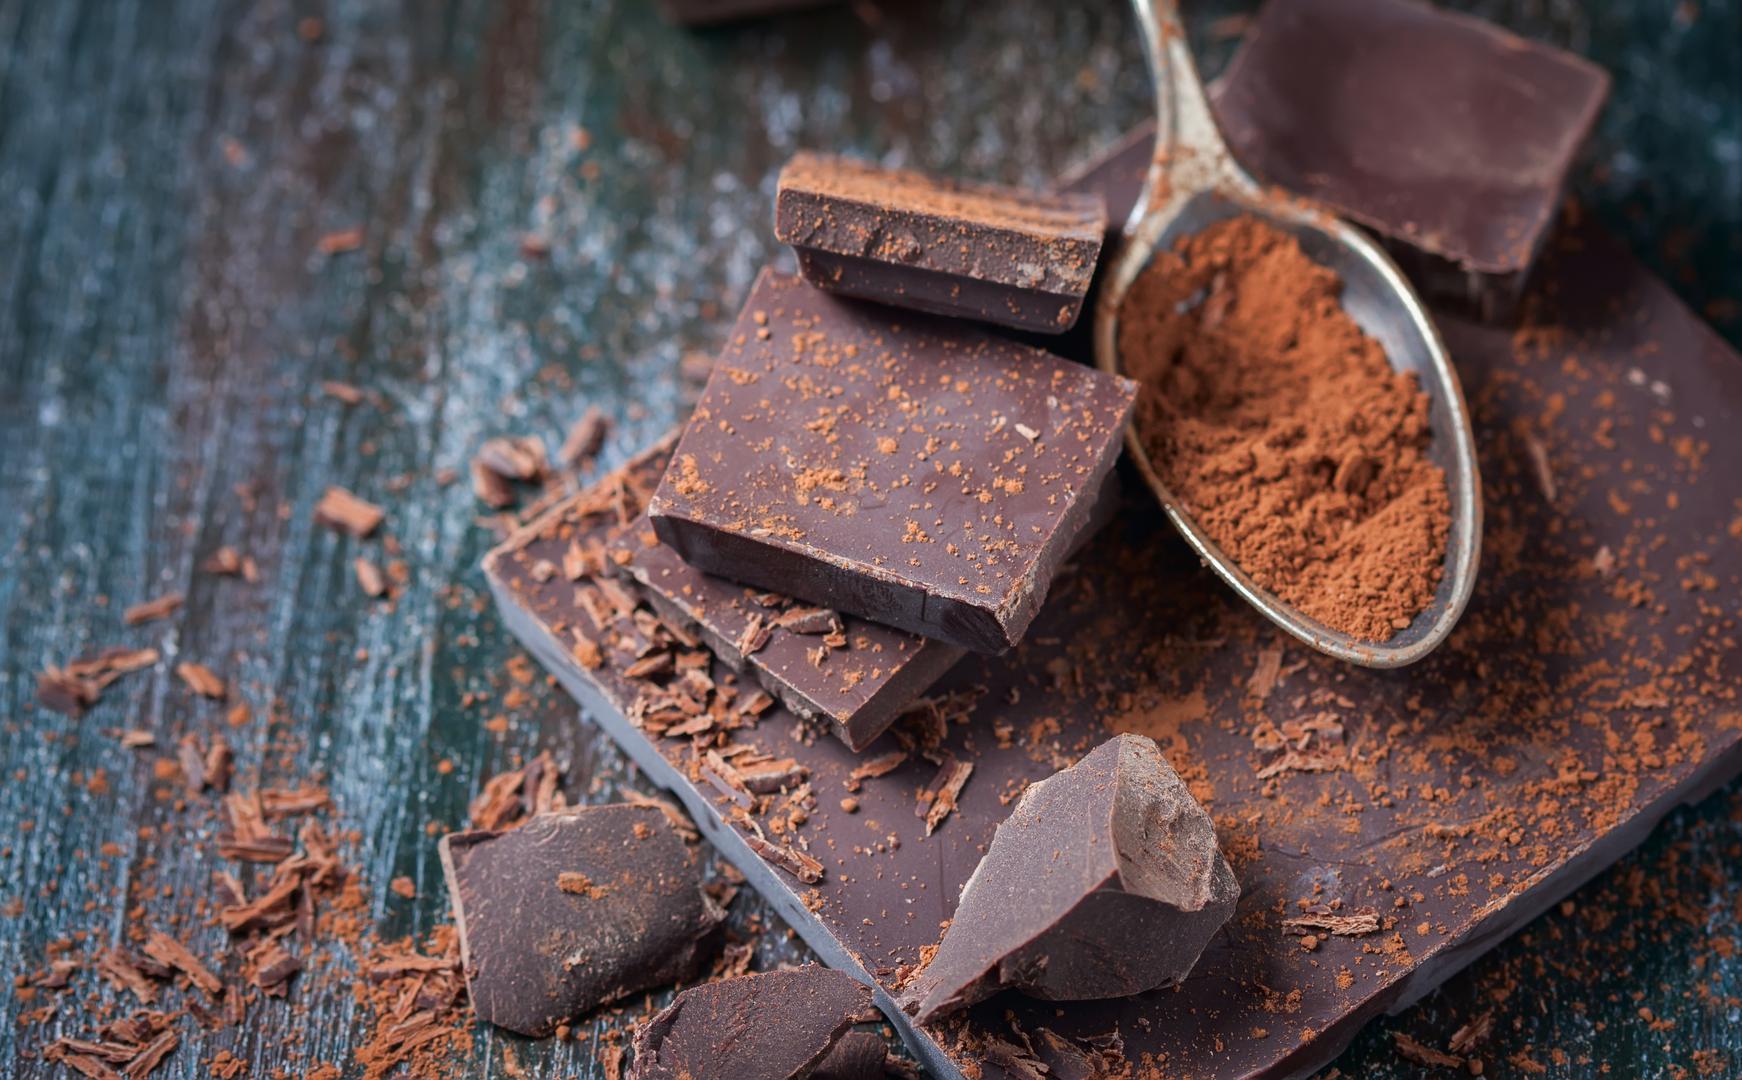 Tamna čokolada: Ne samo da je tamna čokolada ukusna , već ima i mnoge zdravstvene prednosti. Prema Comite, tamna čokolada povezana je sa smanjenim rizikom od srčanog i moždanog udara te dijabetesa jer je puna polifenola i flavonoida bogatih antioksidansima. 'Tamna čokolada ima više antioksidansa čak i od borovnica, još jedne super namirnice', dodaje.Tamna čokolada je također povezana sa zdravljem mozga ― neke studije su pokazale da tamna čokolada može povećati neuroplastičnost, sposobnost mozga da formira nove sinaptičke veze za bolje pamćenje, kogniciju i raspoloženje. Comite preporučuje da potražite tamnu čokoladu s udjelom kakaa od 75% ili više.